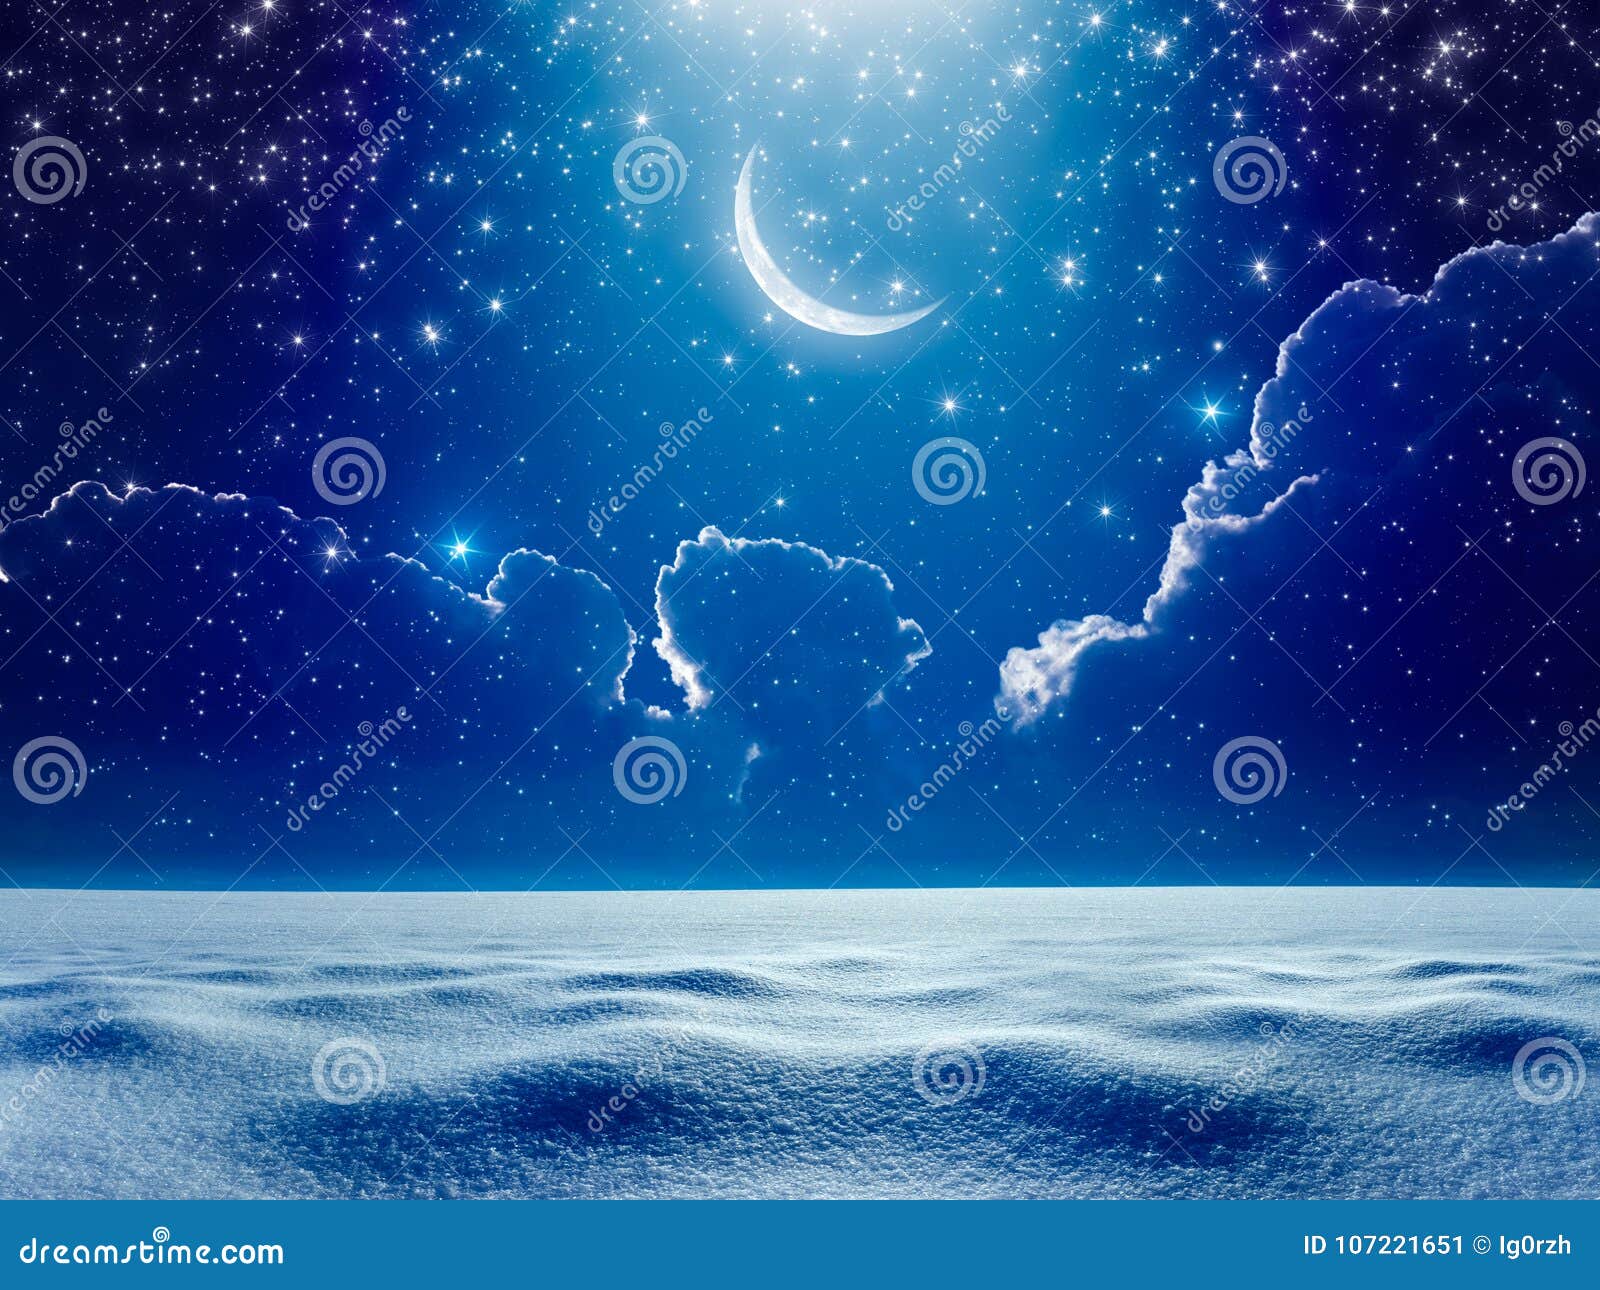 blue crescent moon wallpaper